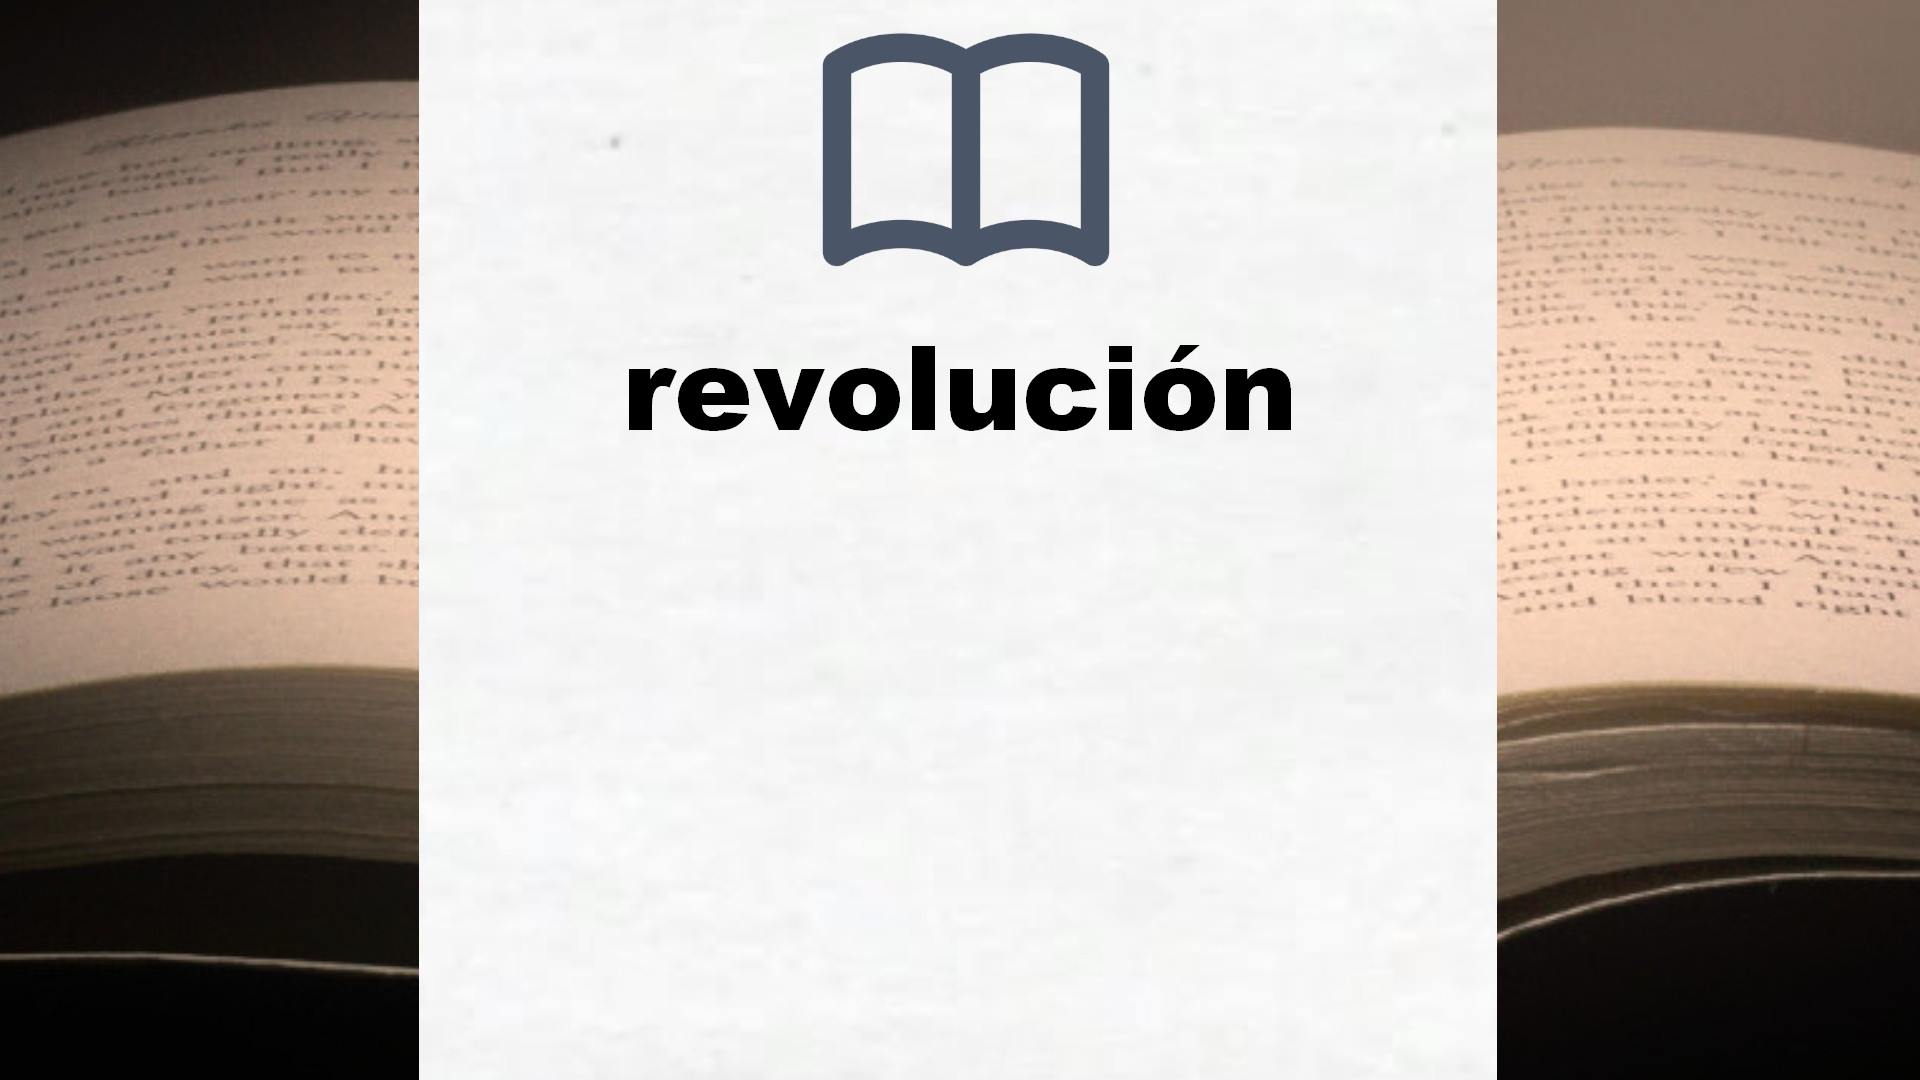 Libros sobre revolución